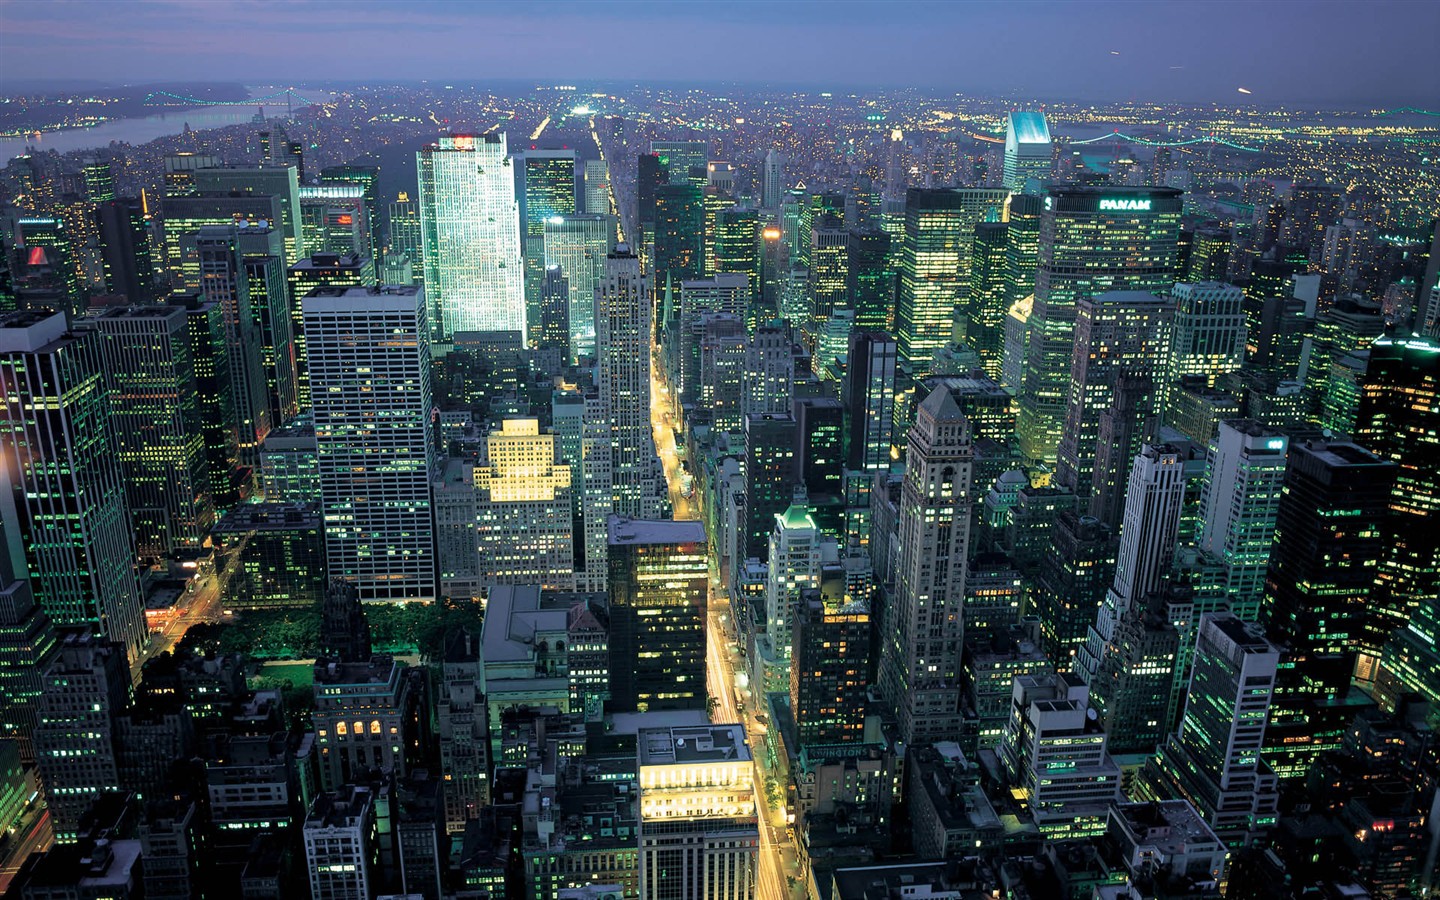 La bulliciosa ciudad de Nueva York Edificio #16 - 1440x900